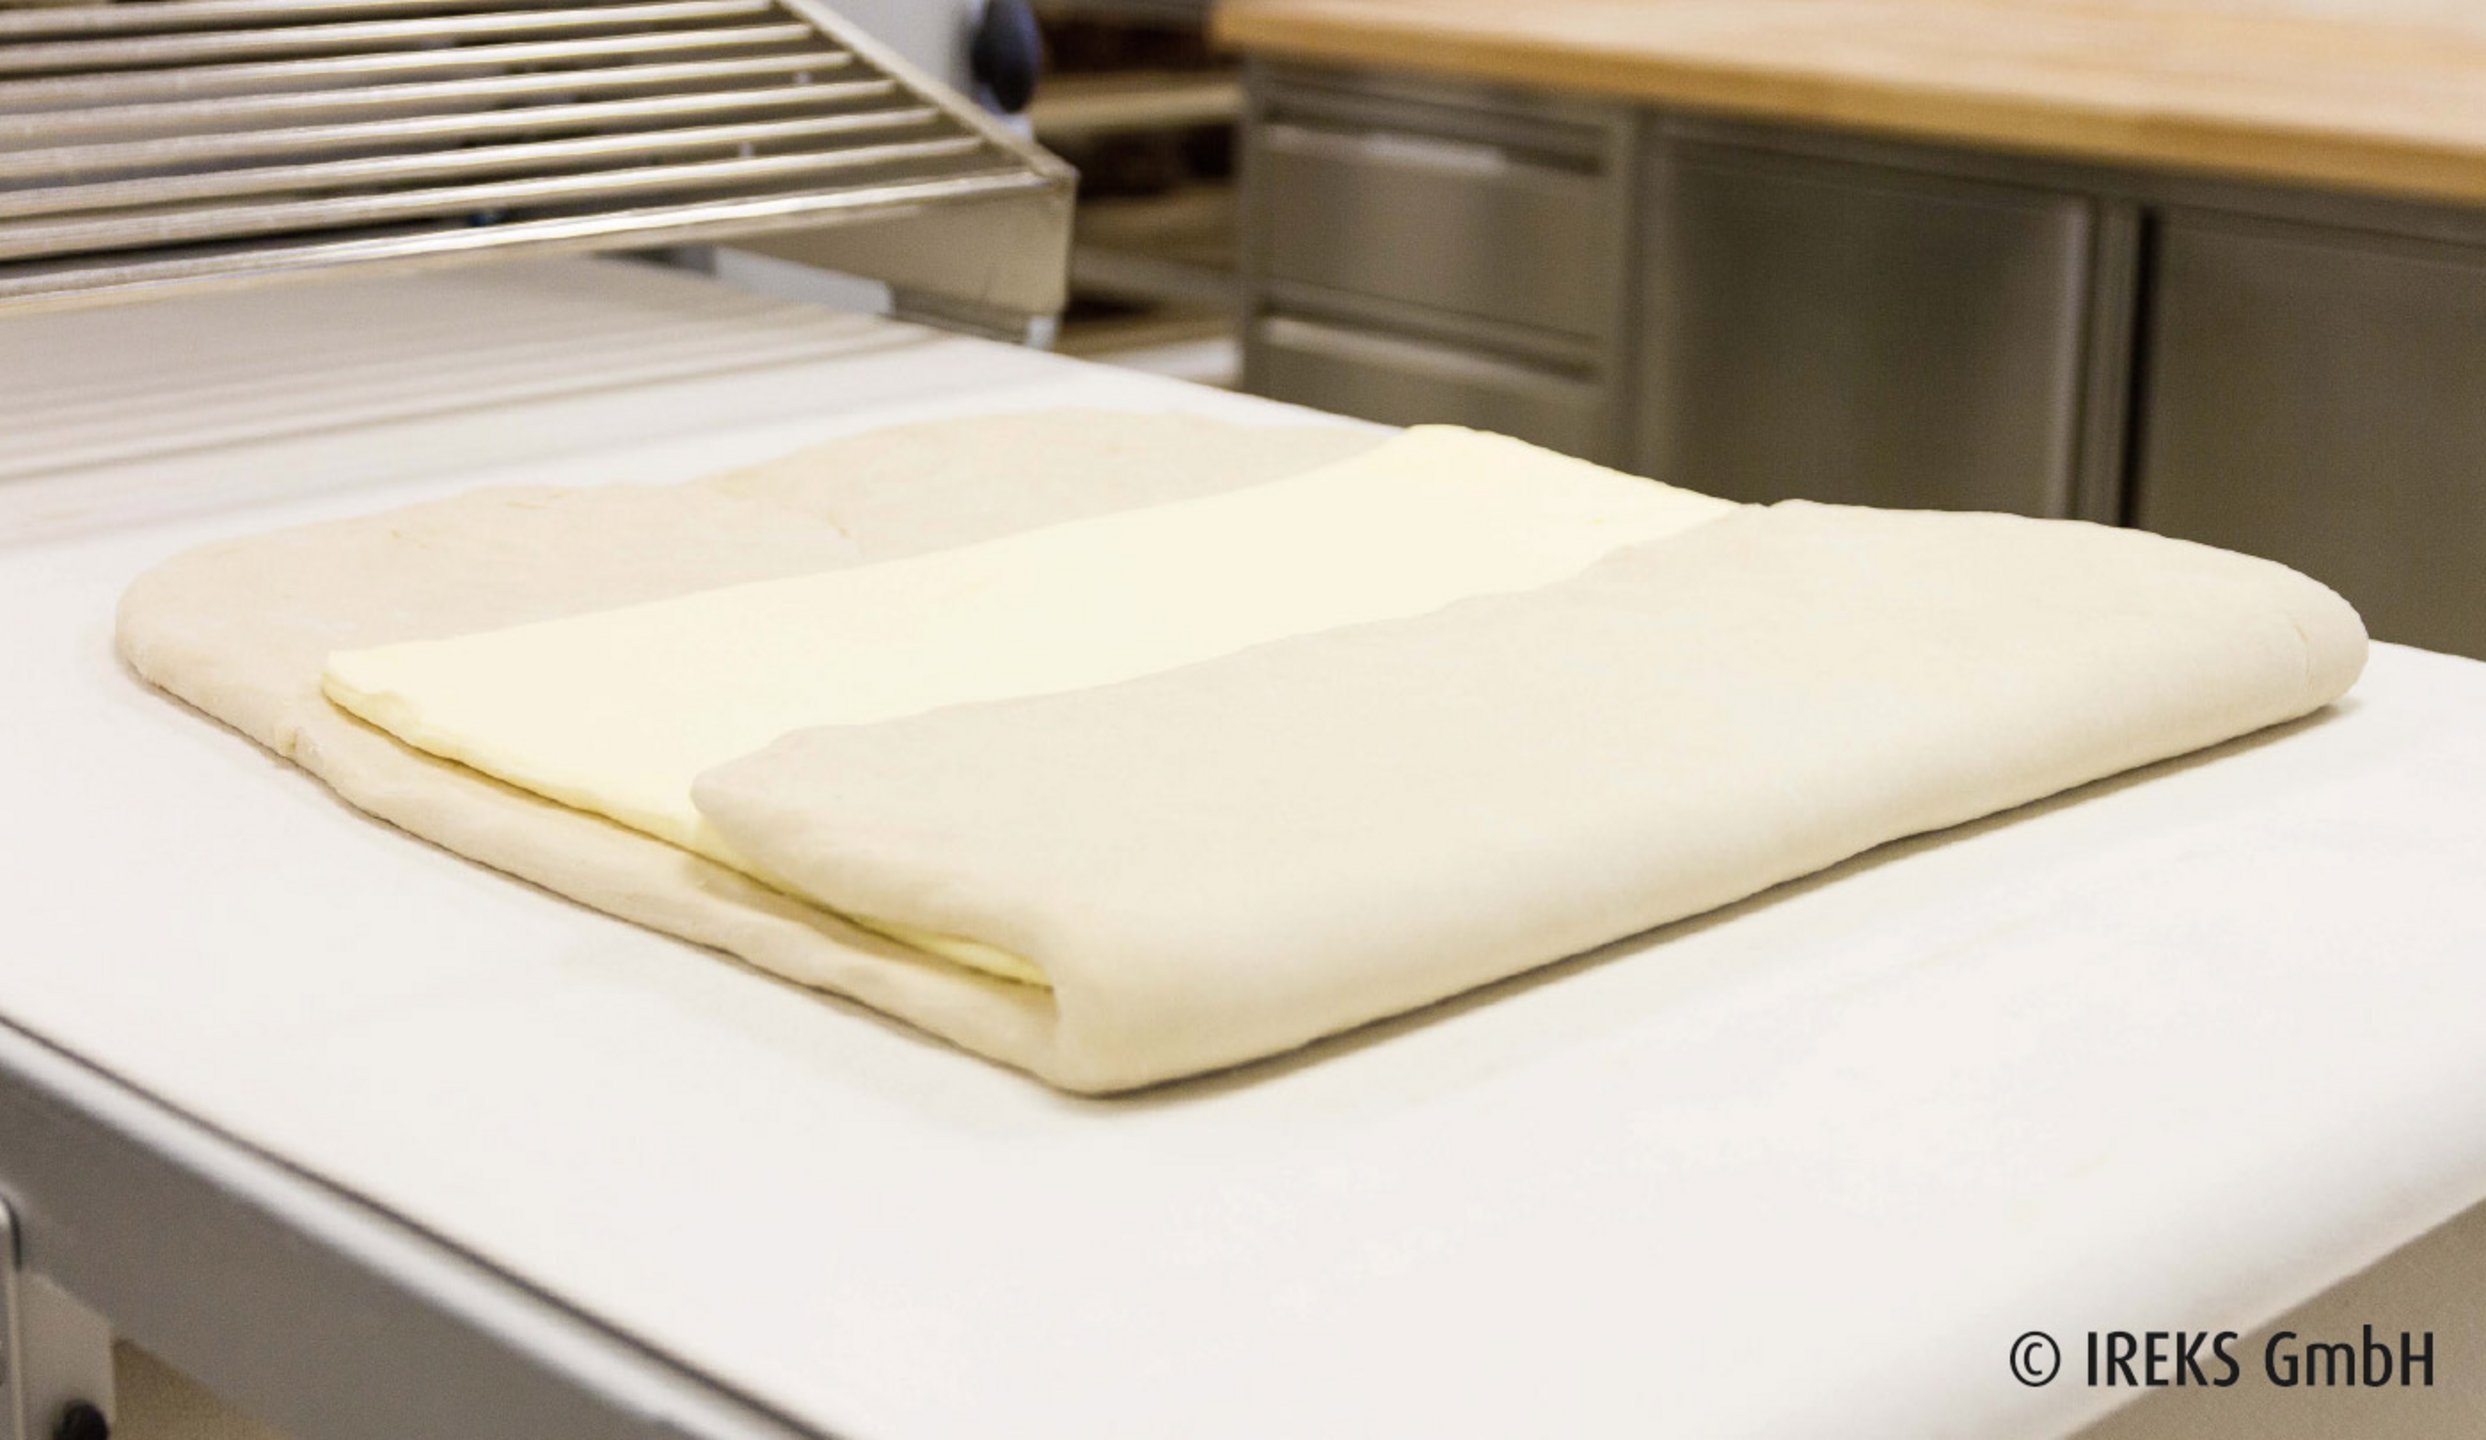 Folding Dough Sheeter 15.5